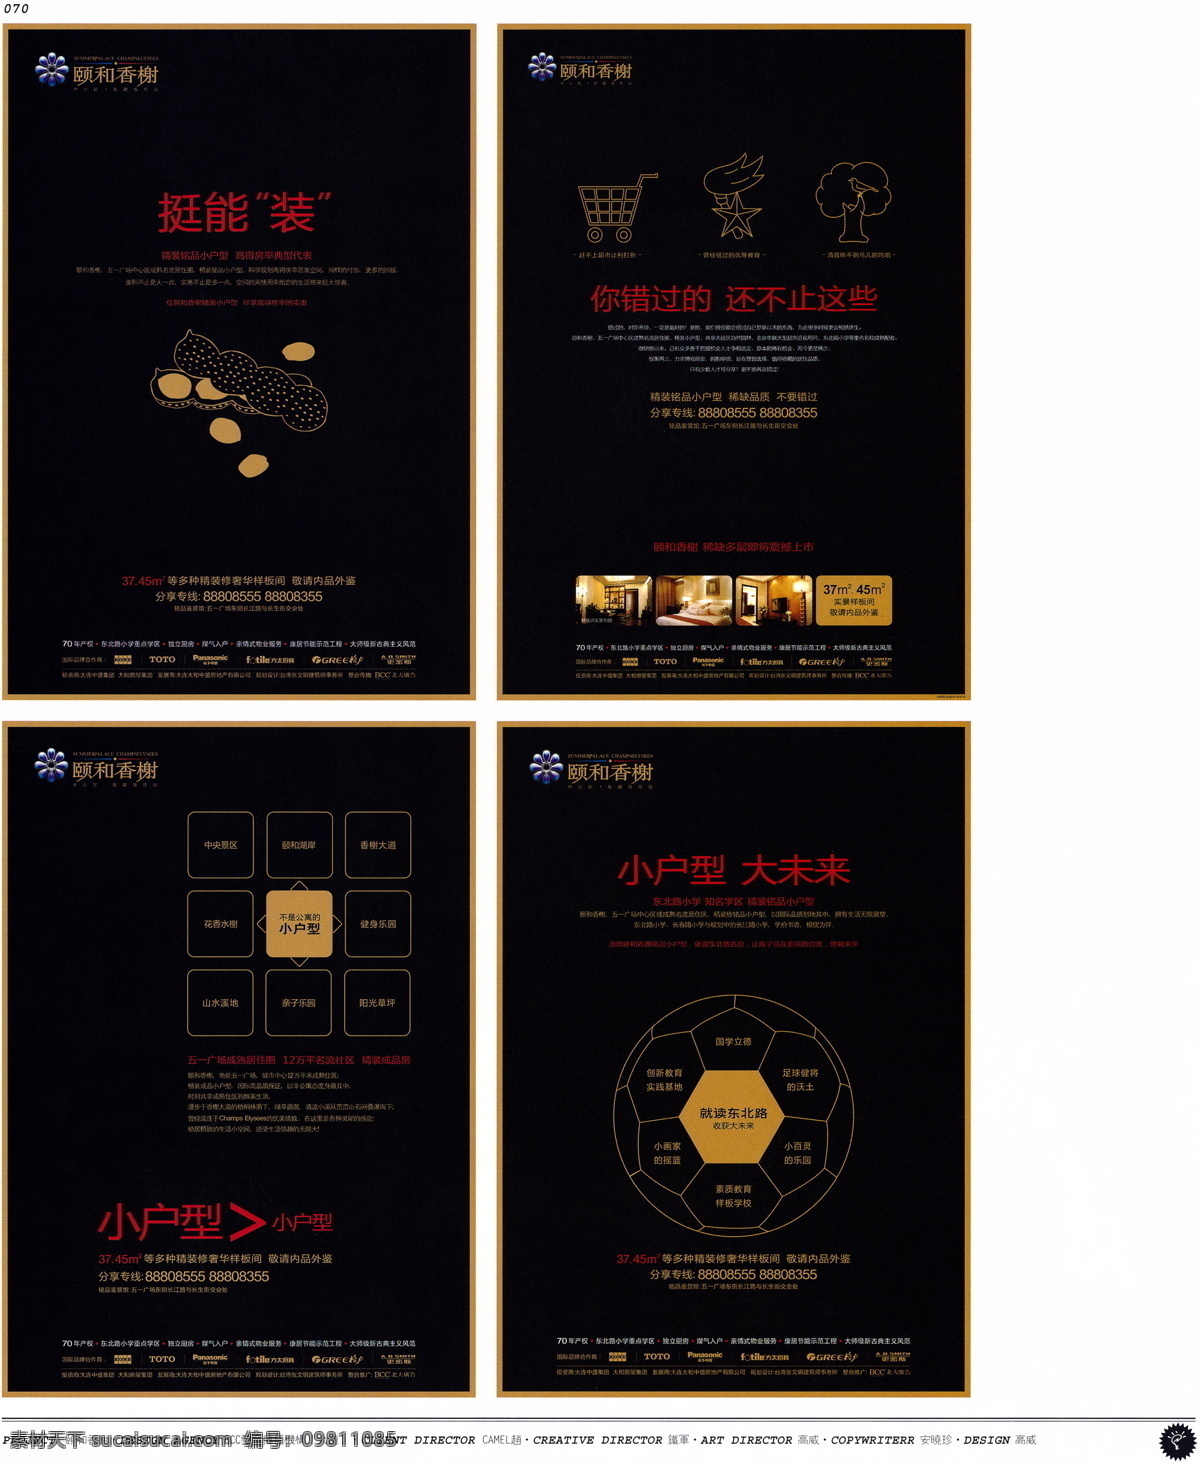 中国 房地产 广告 年鉴 第一册 创意设计 设计素材 房地产业 平面创意 平面设计 黑色